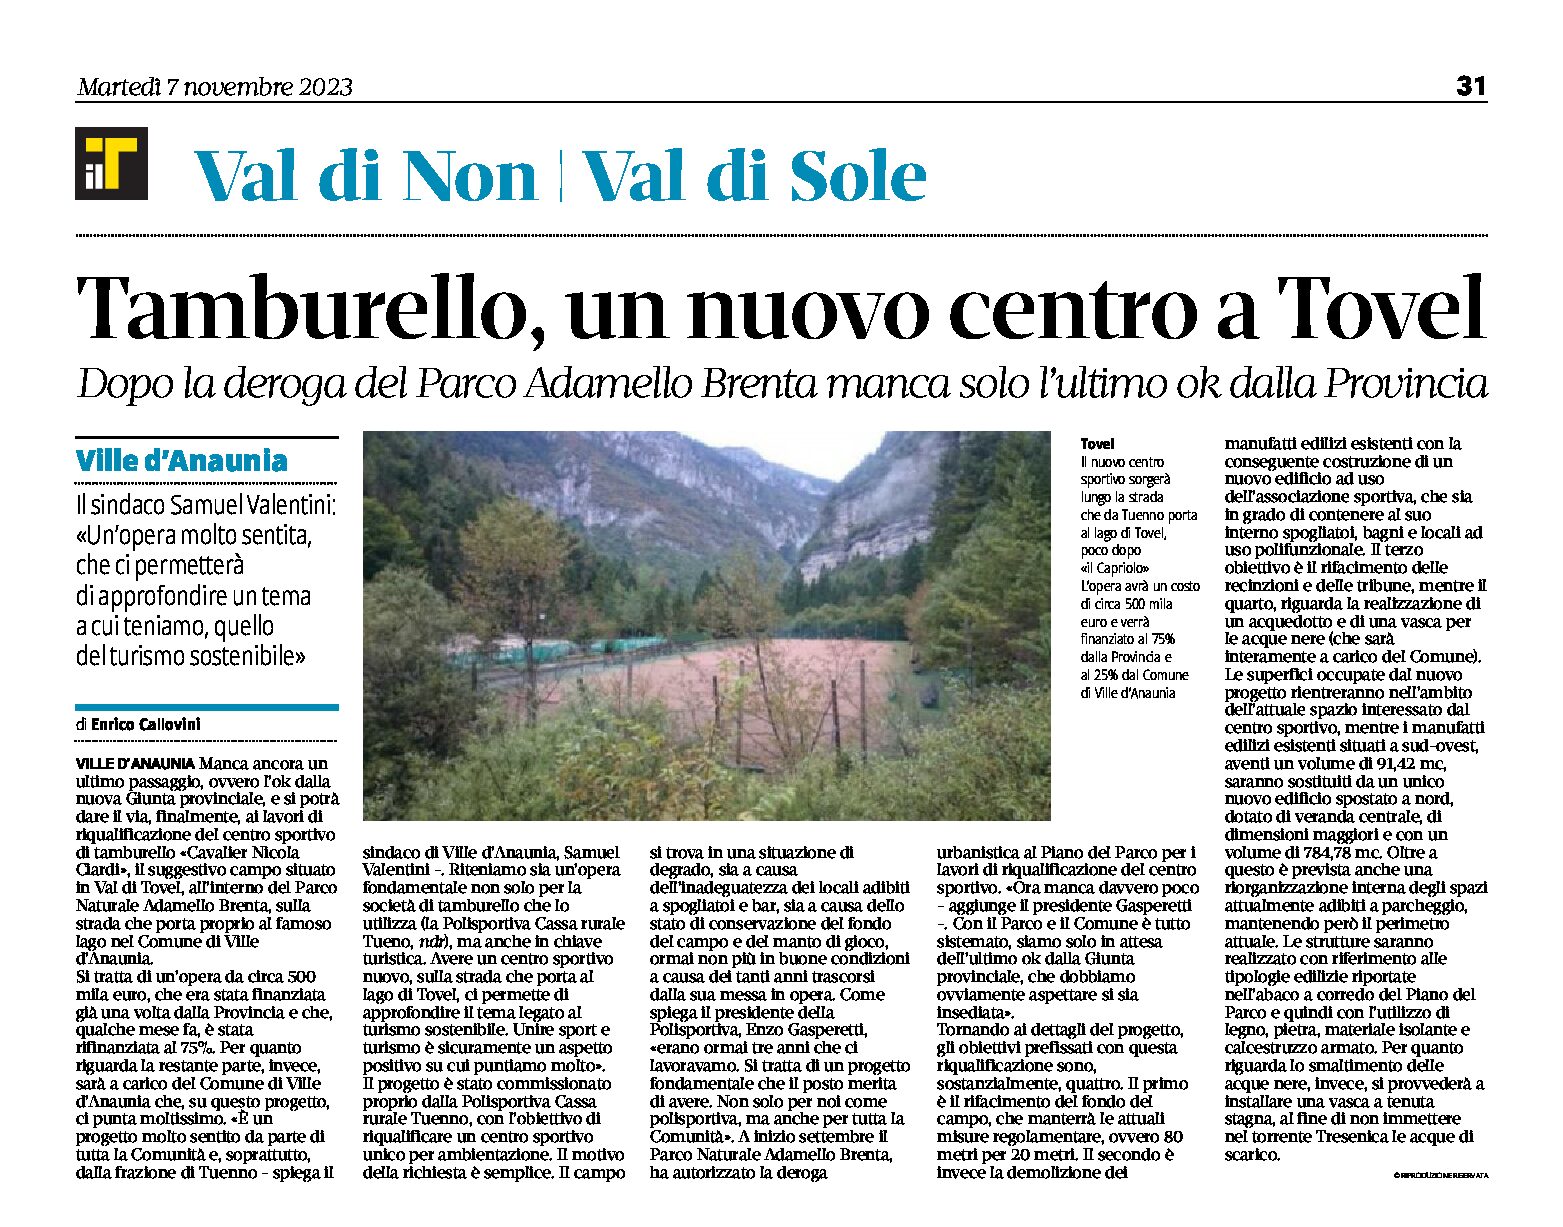 Val di Tovel: riqualificazione del centro sportivo di tamburello nel Parco Adamello Brenta